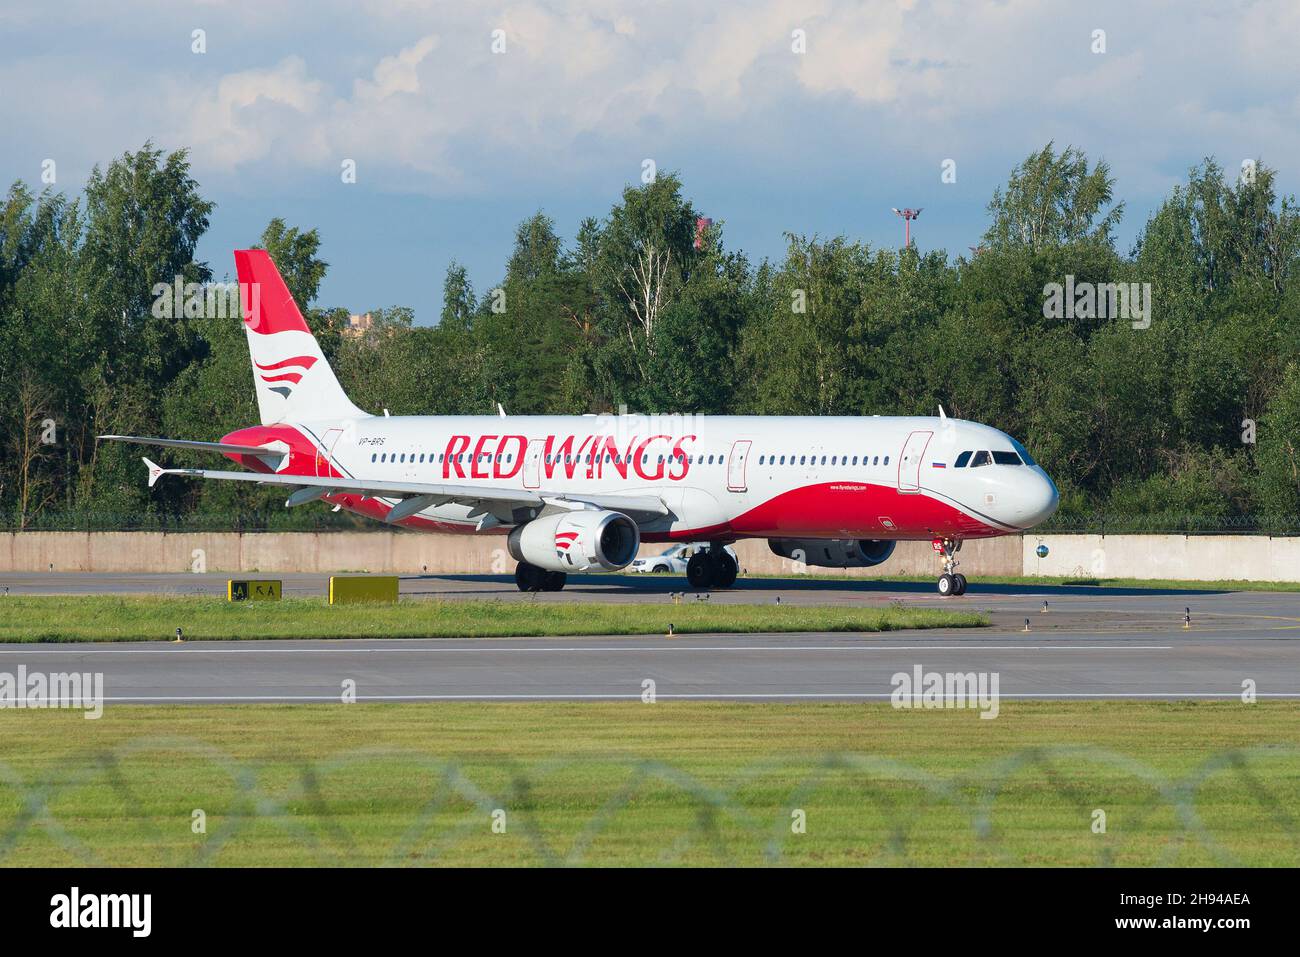 SAINT-PÉTERSBOURG, RUSSIE - le 08 AOÛT 2020 : l'Airbus A321-231 (VP-BRS) des compagnies aériennes Red Wings se prépare à partir à l'aéroport de Pulkovo Banque D'Images